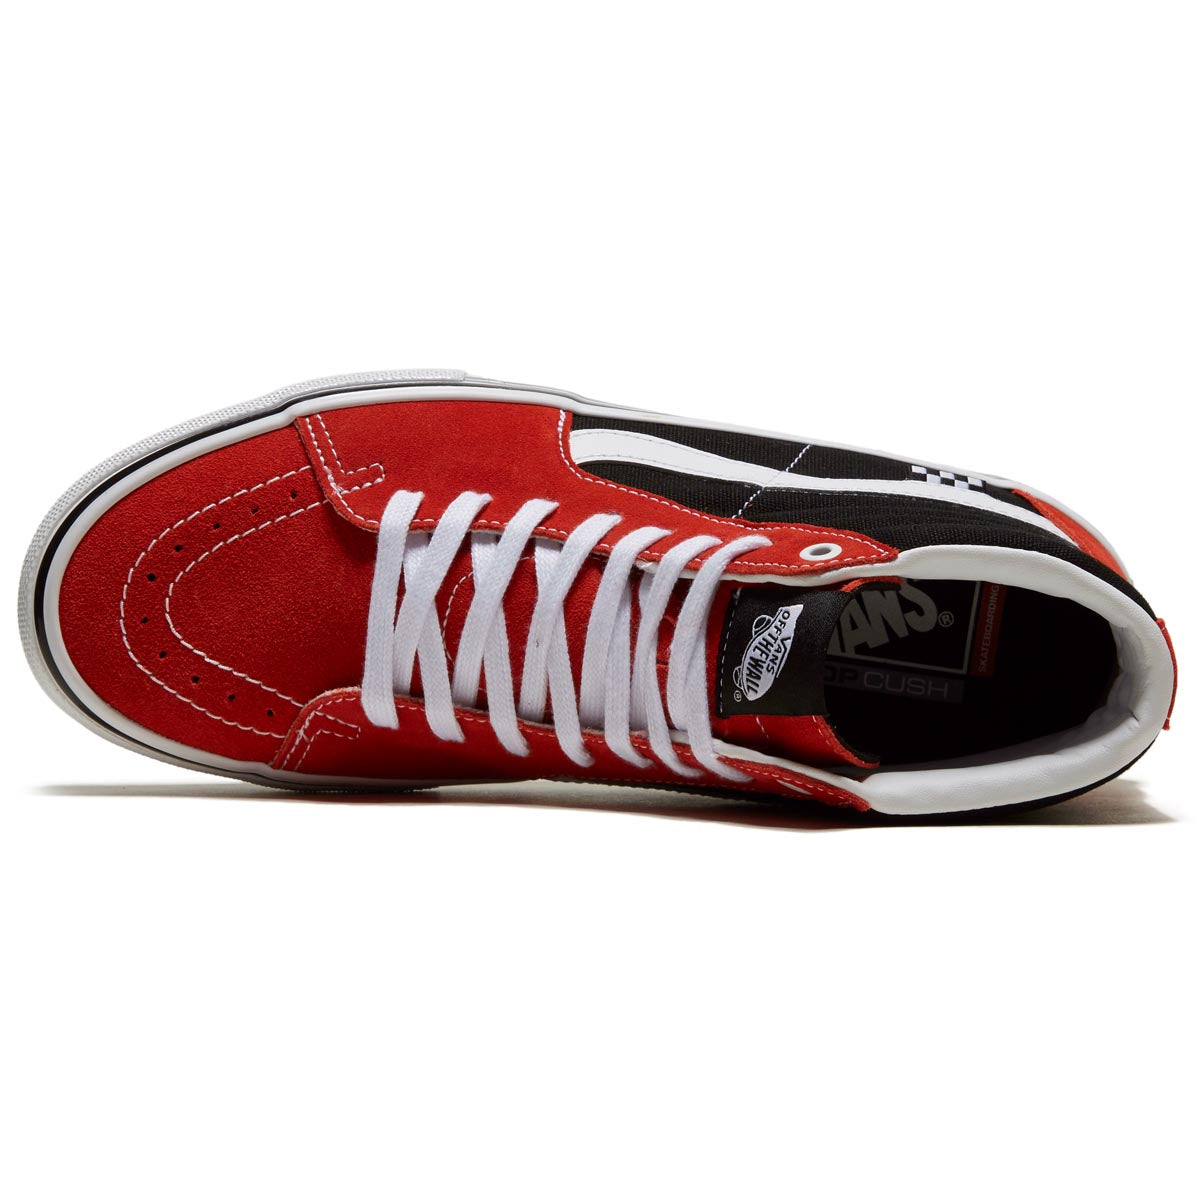 Vans Skate Sk8-Hi Shoes - Red/Black image 3